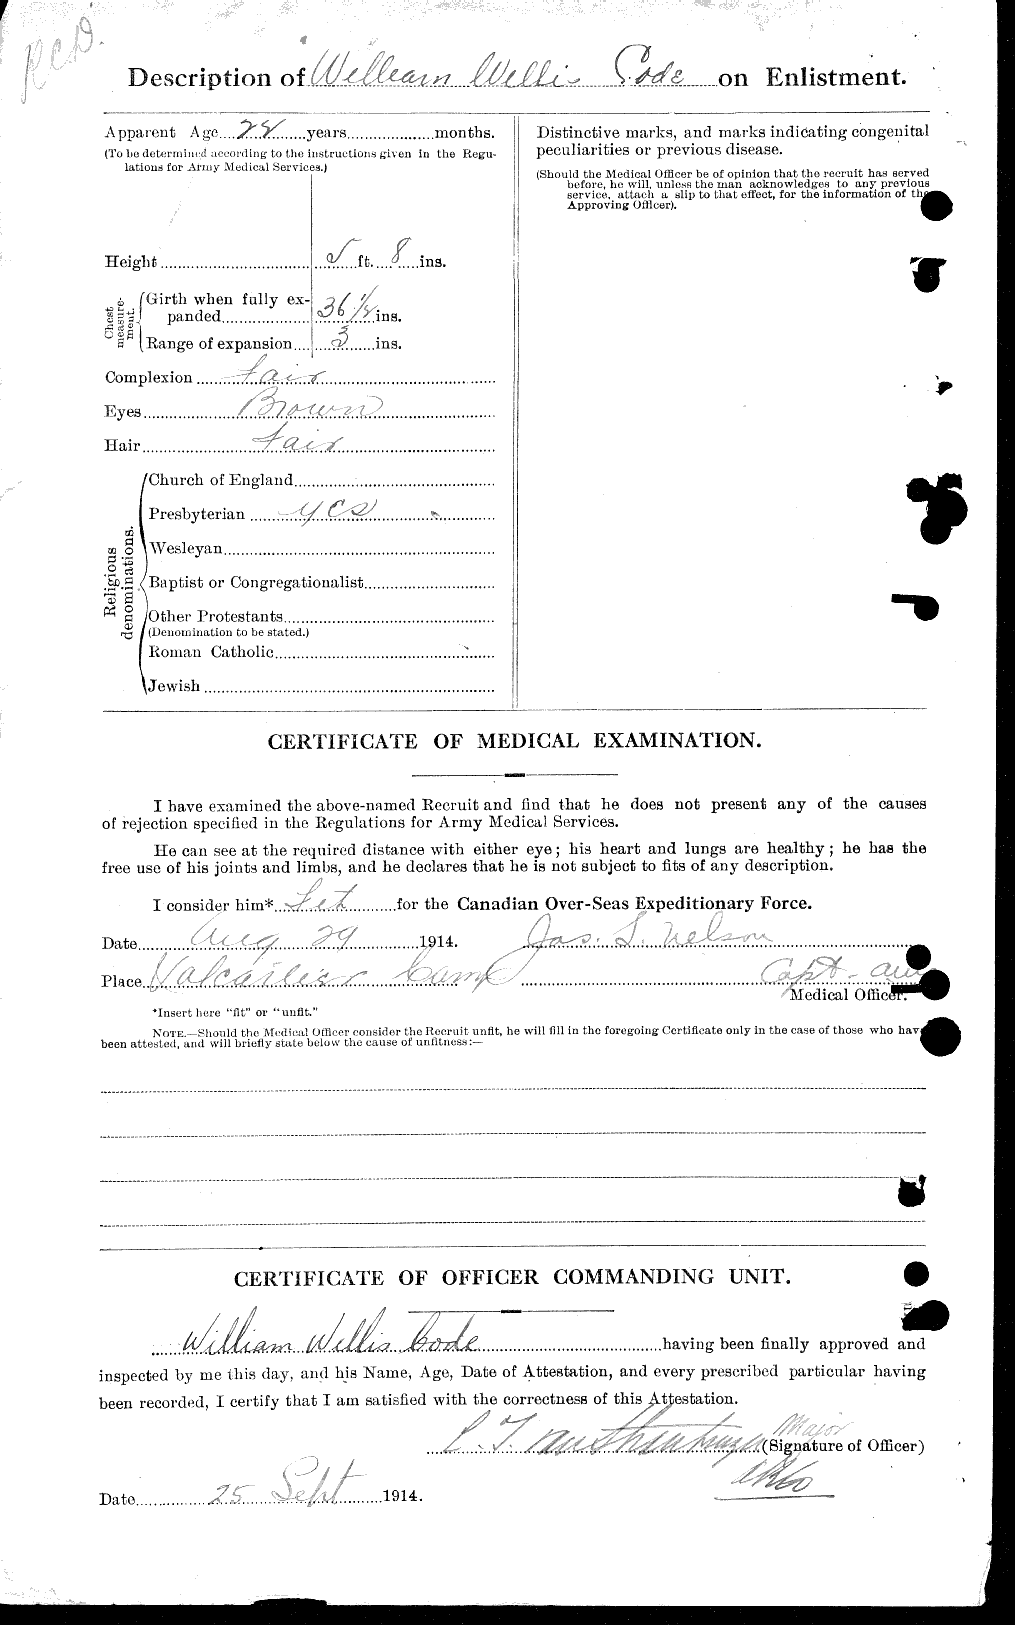 Dossiers du Personnel de la Première Guerre mondiale - CEC 026840b